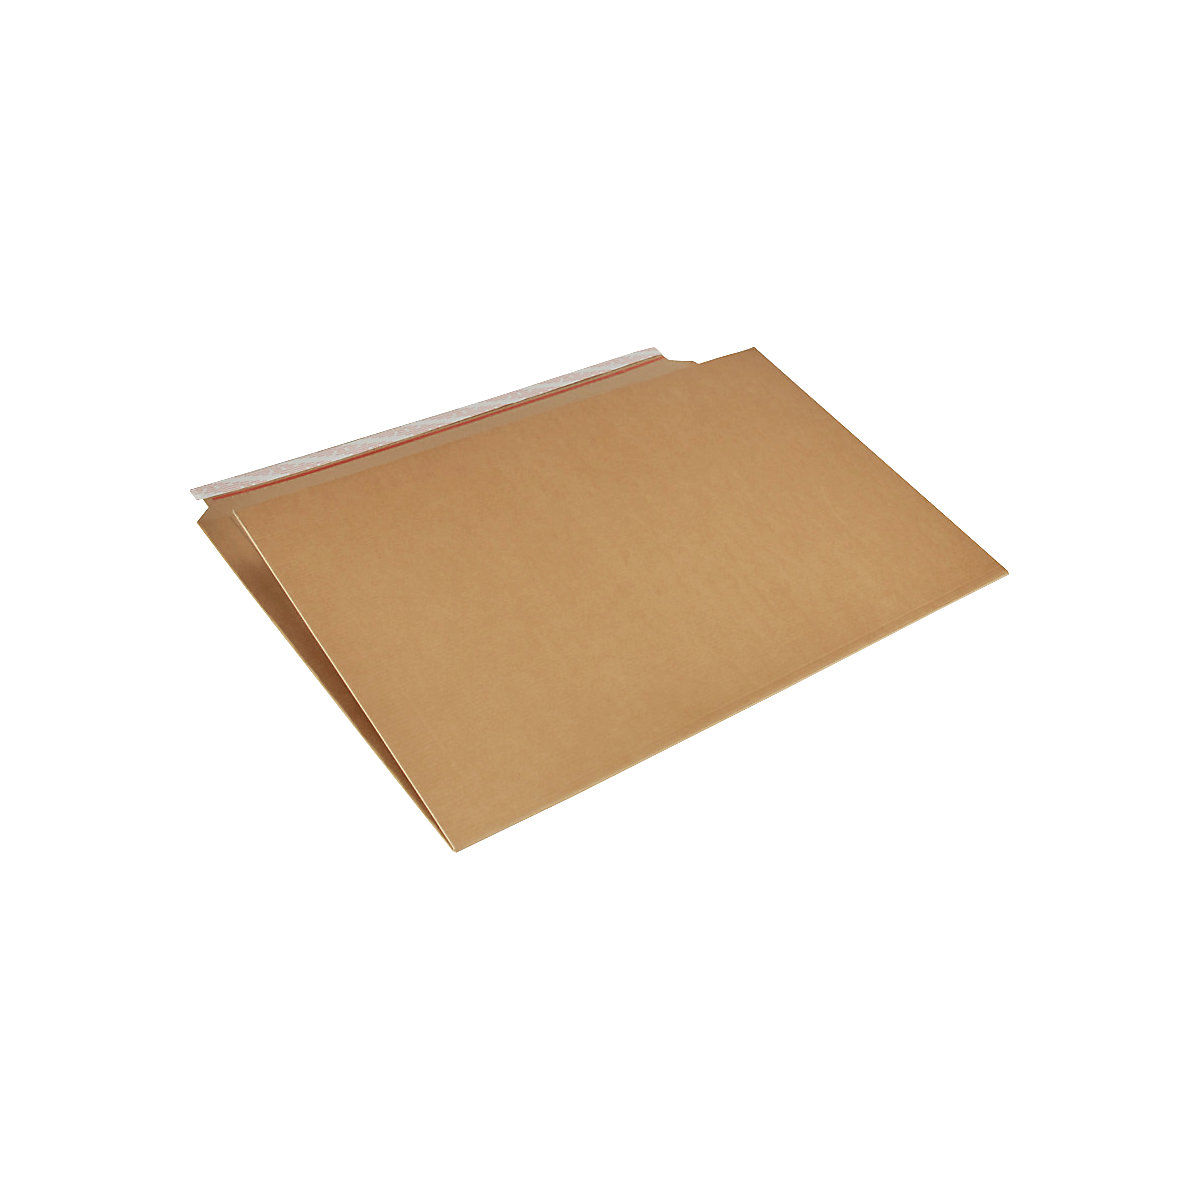 Imballaggio per libri Multistar – flow, marrone, lungh. x largh. 770 x 520 mm, a partire da 8 pz.-3